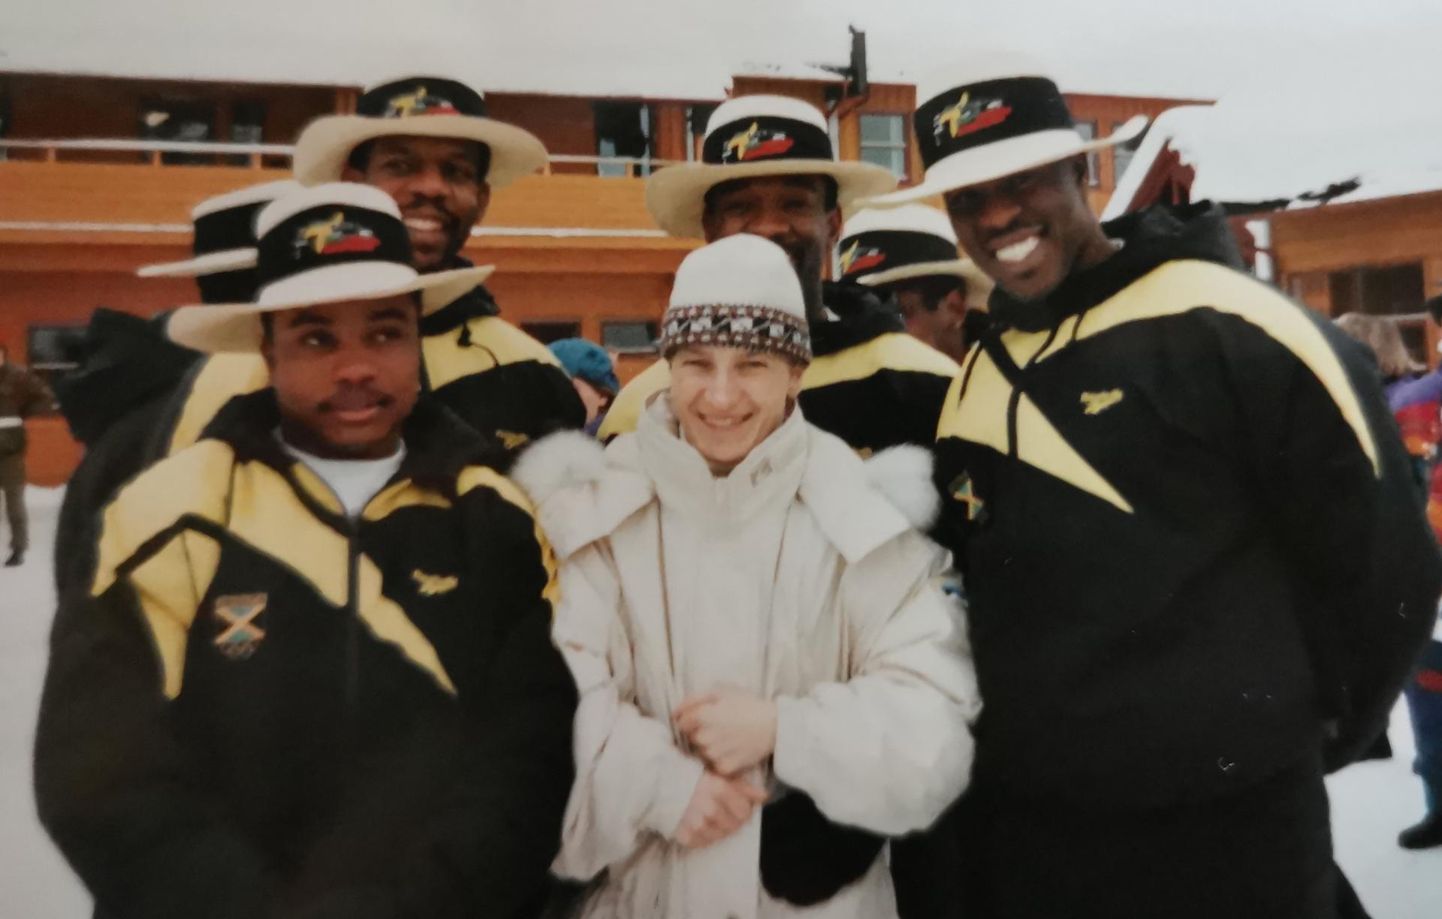 Krista Lepik on end Jamaika neljabobimeeskonnaga Alberville`i olümpial ühele pildile sättinud. Kes neist mustadest meestest on kes, seda on raske tuvastada, aga protokolli põhjal võistlesid nad koosseisus Dudley Stokes, Ricky McIntosh, Michael White ja Chris Stokes.